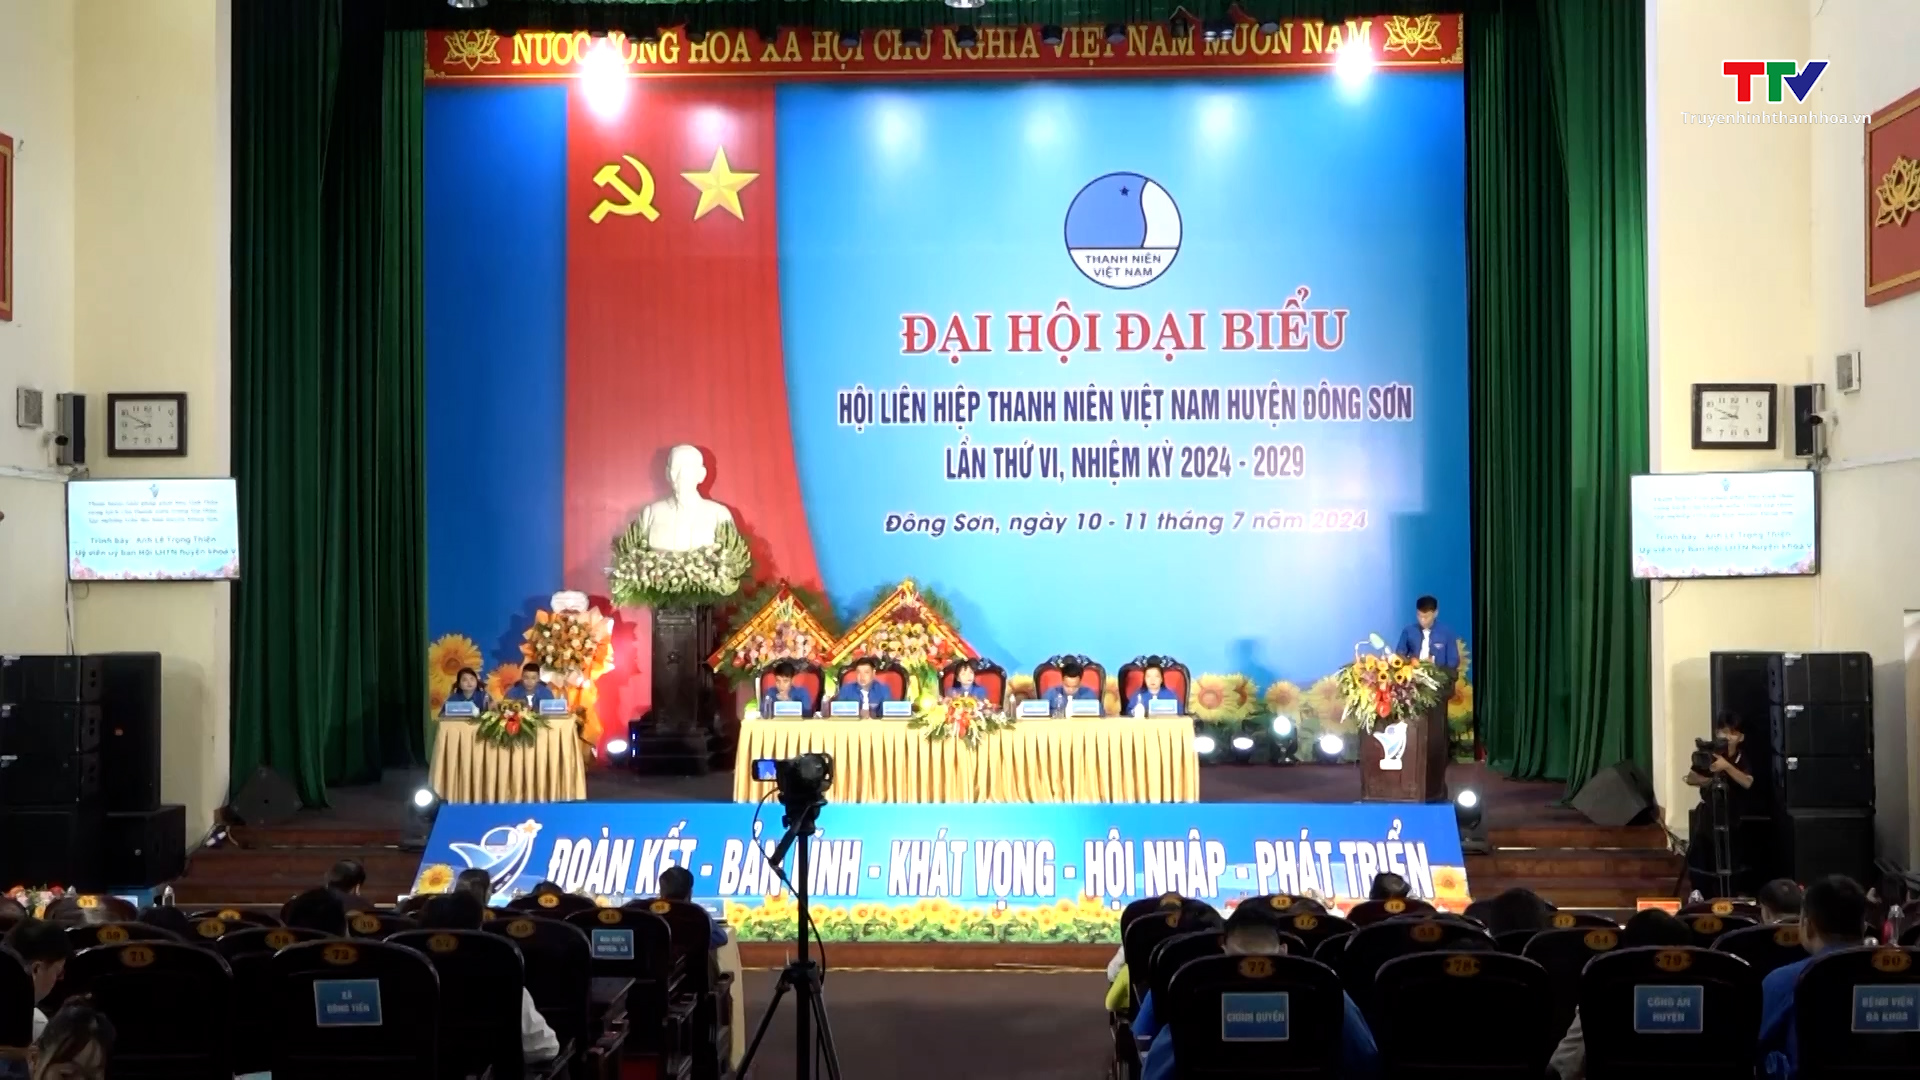 Đại hội đại biểu Hội Liên hiệp Thanh niên Việt Nam huyện Đông Sơn lần thứ VI nhiệm kỳ 2024 – 2029- Ảnh 1.